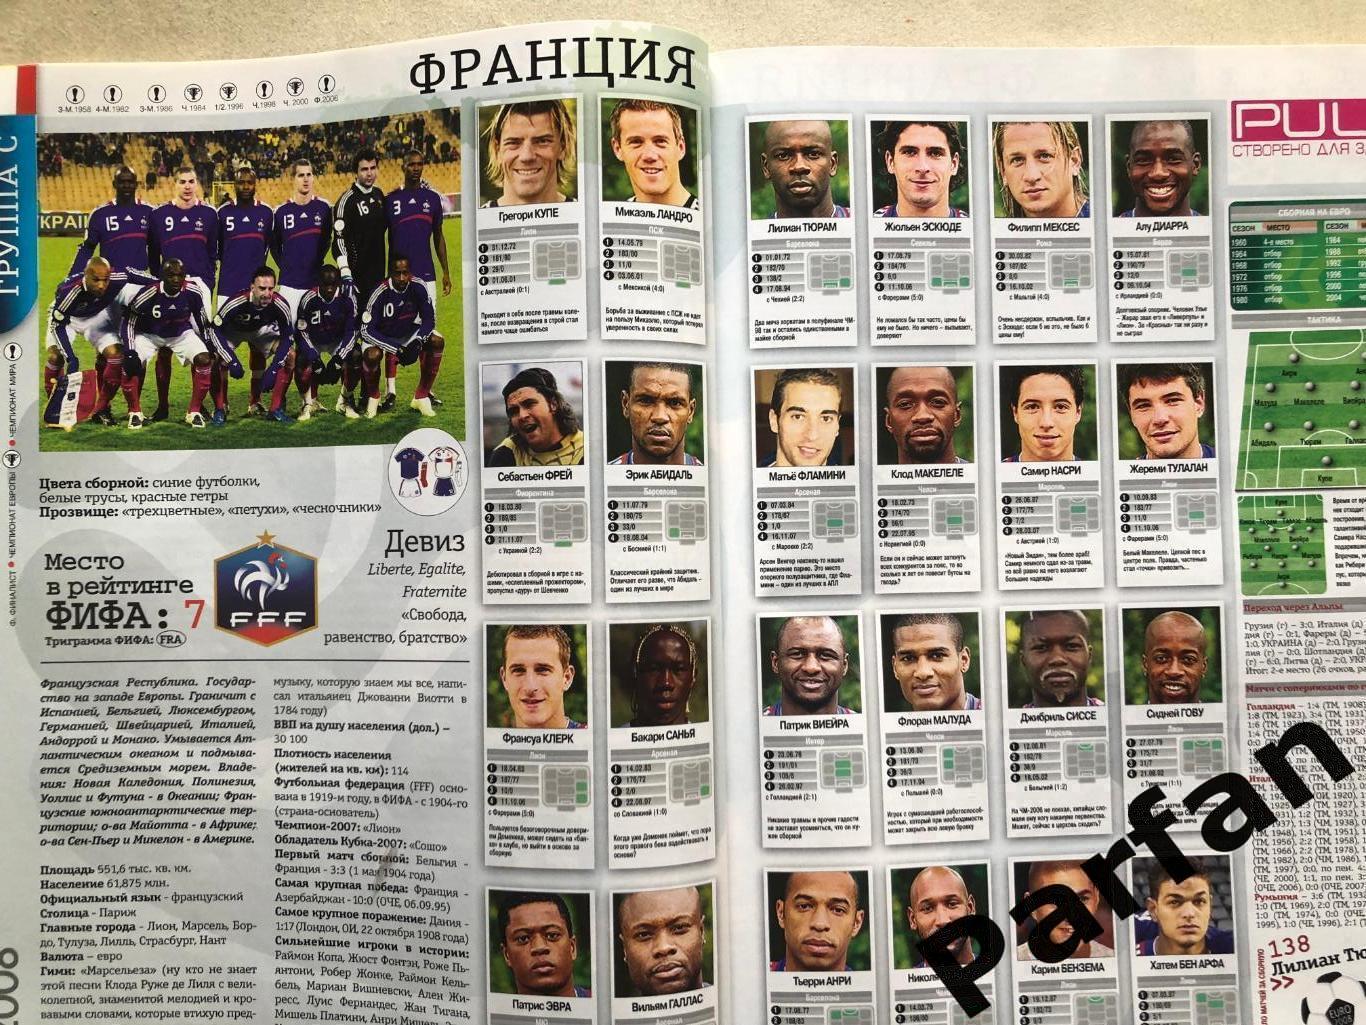 Журнал Футбол Україна Чемпіонат Європи 2008 Спецвипуск 3